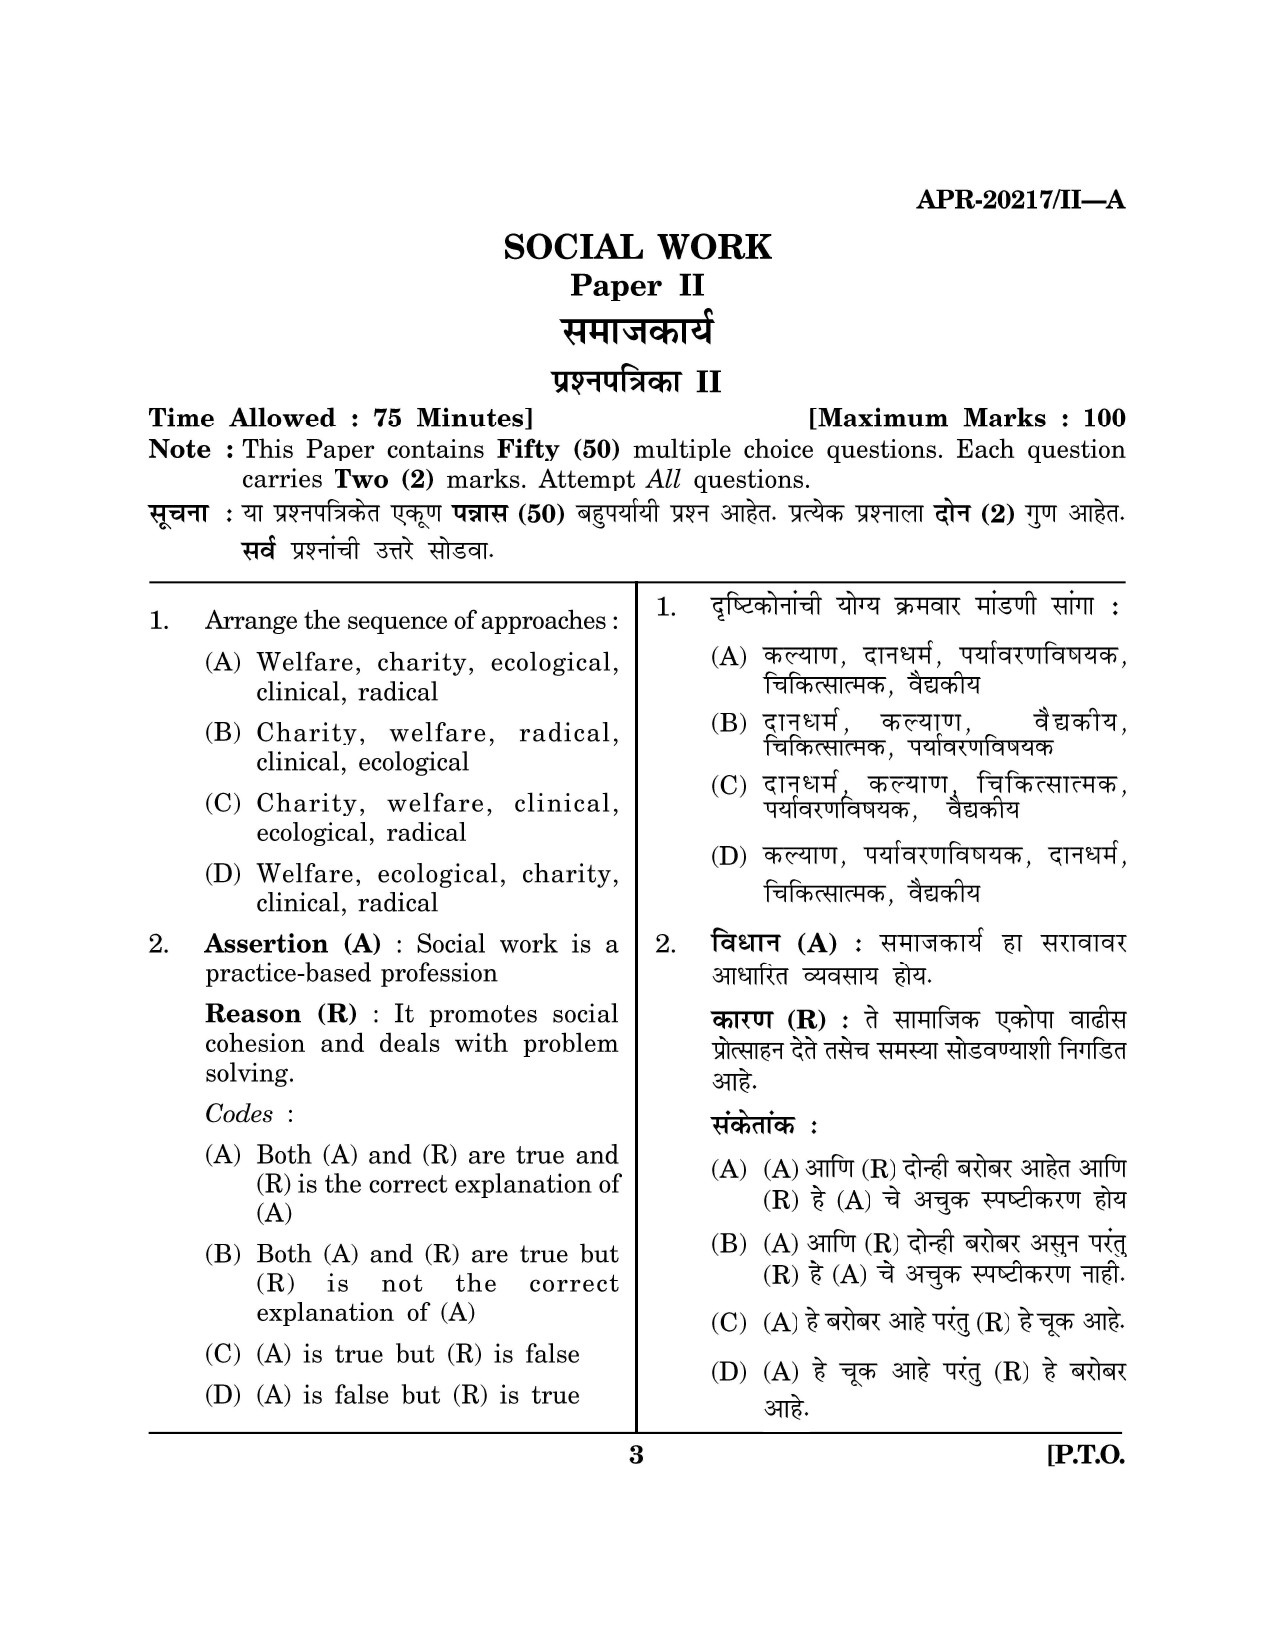 Maharashtra SET Social Work Question Paper II April 2017 2